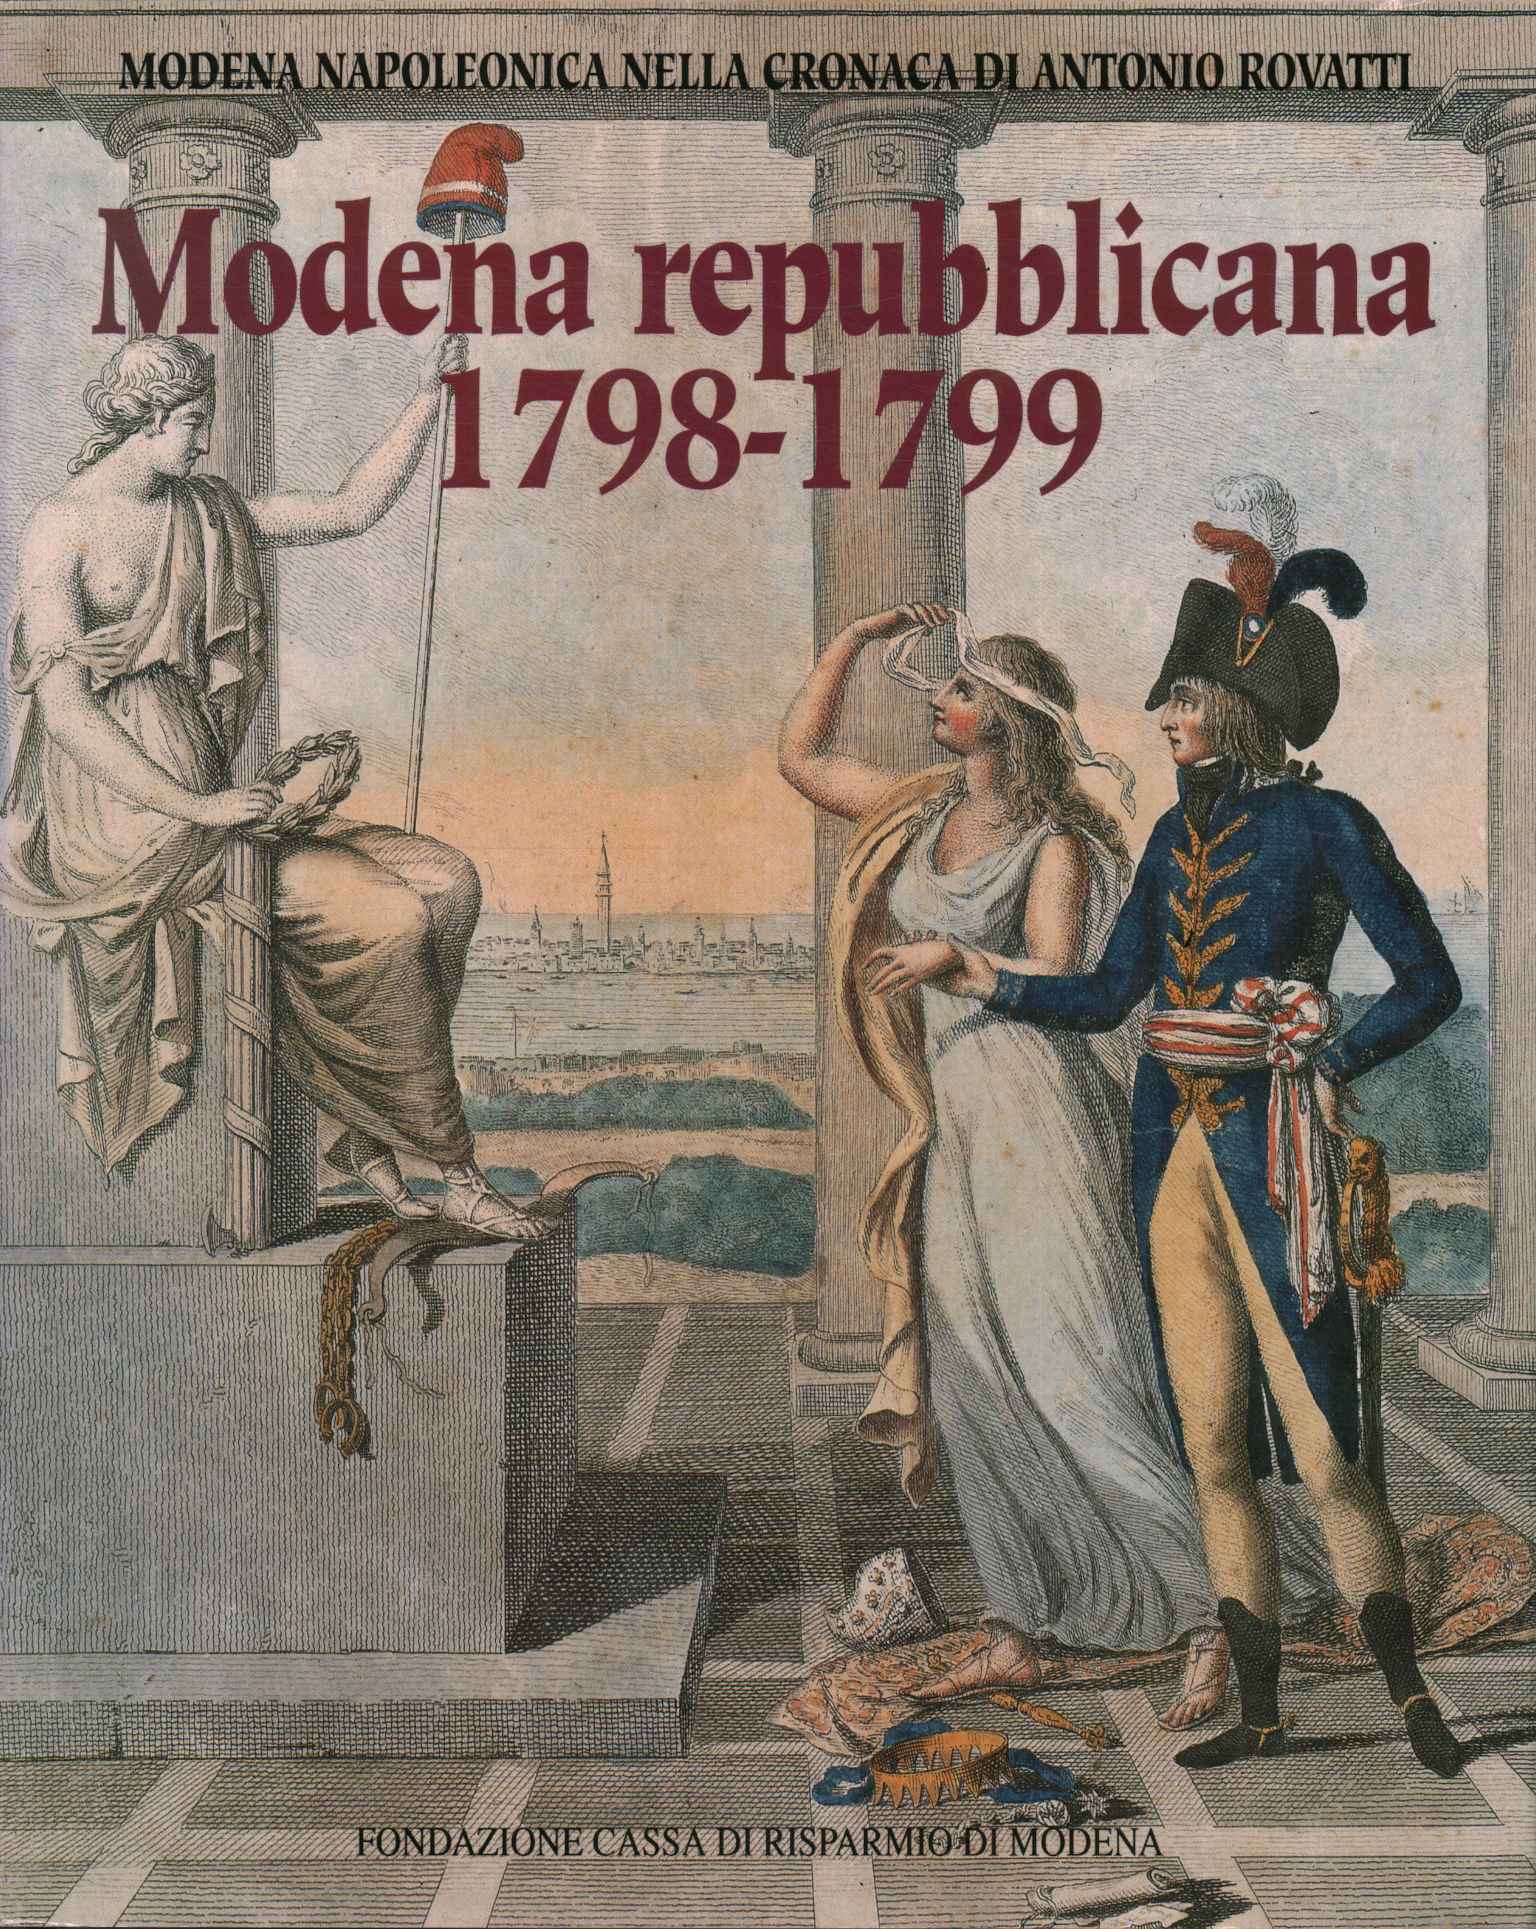 Módena republicana 1798-1799